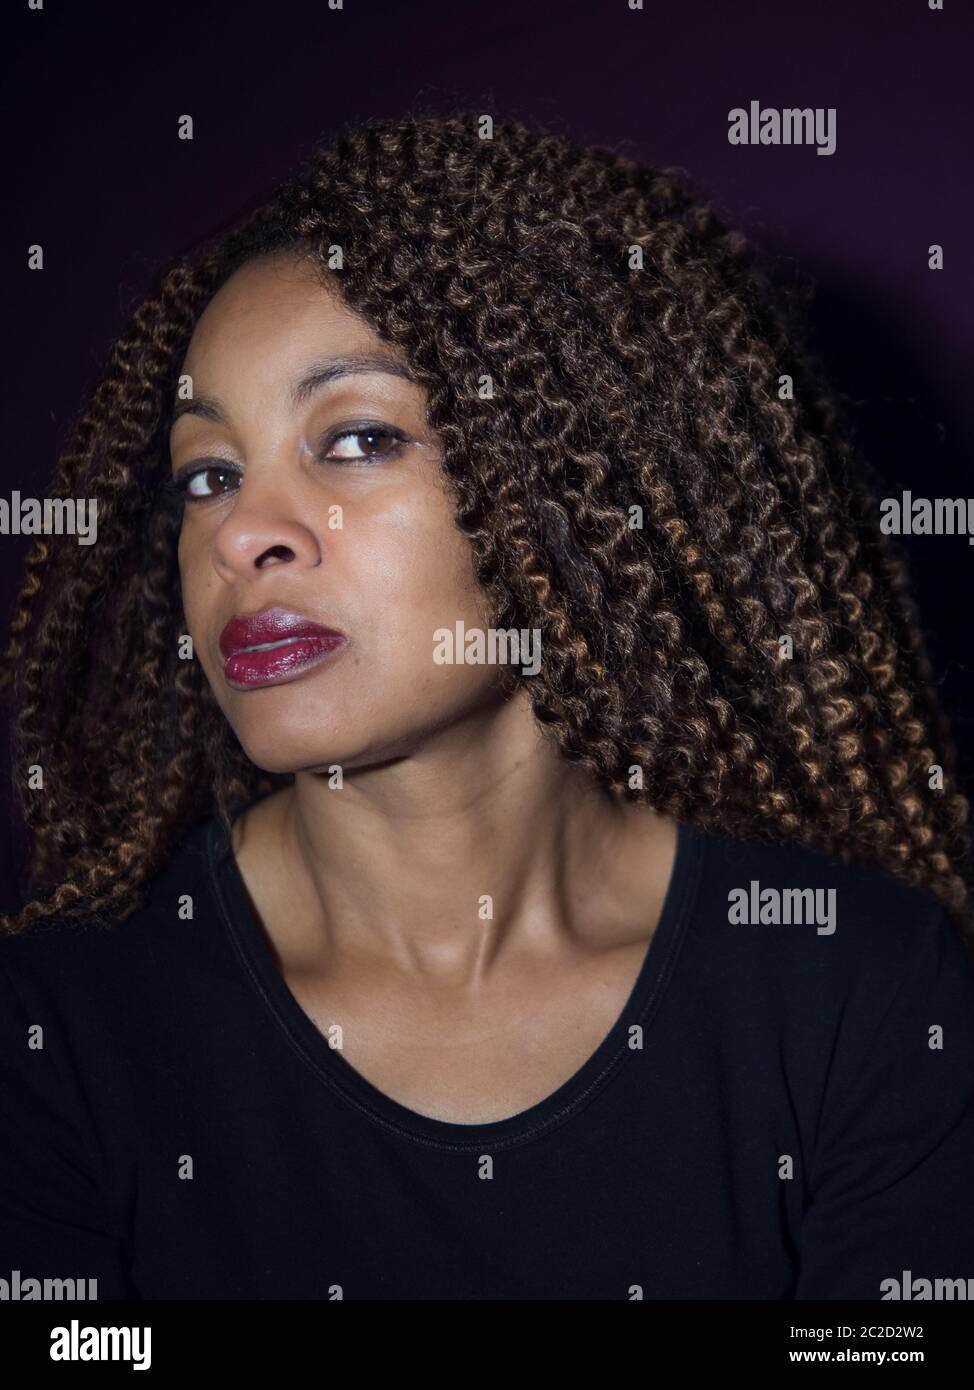 Ritratto verticale di una donna afro-americana che guarda la fotocamera Foto Stock